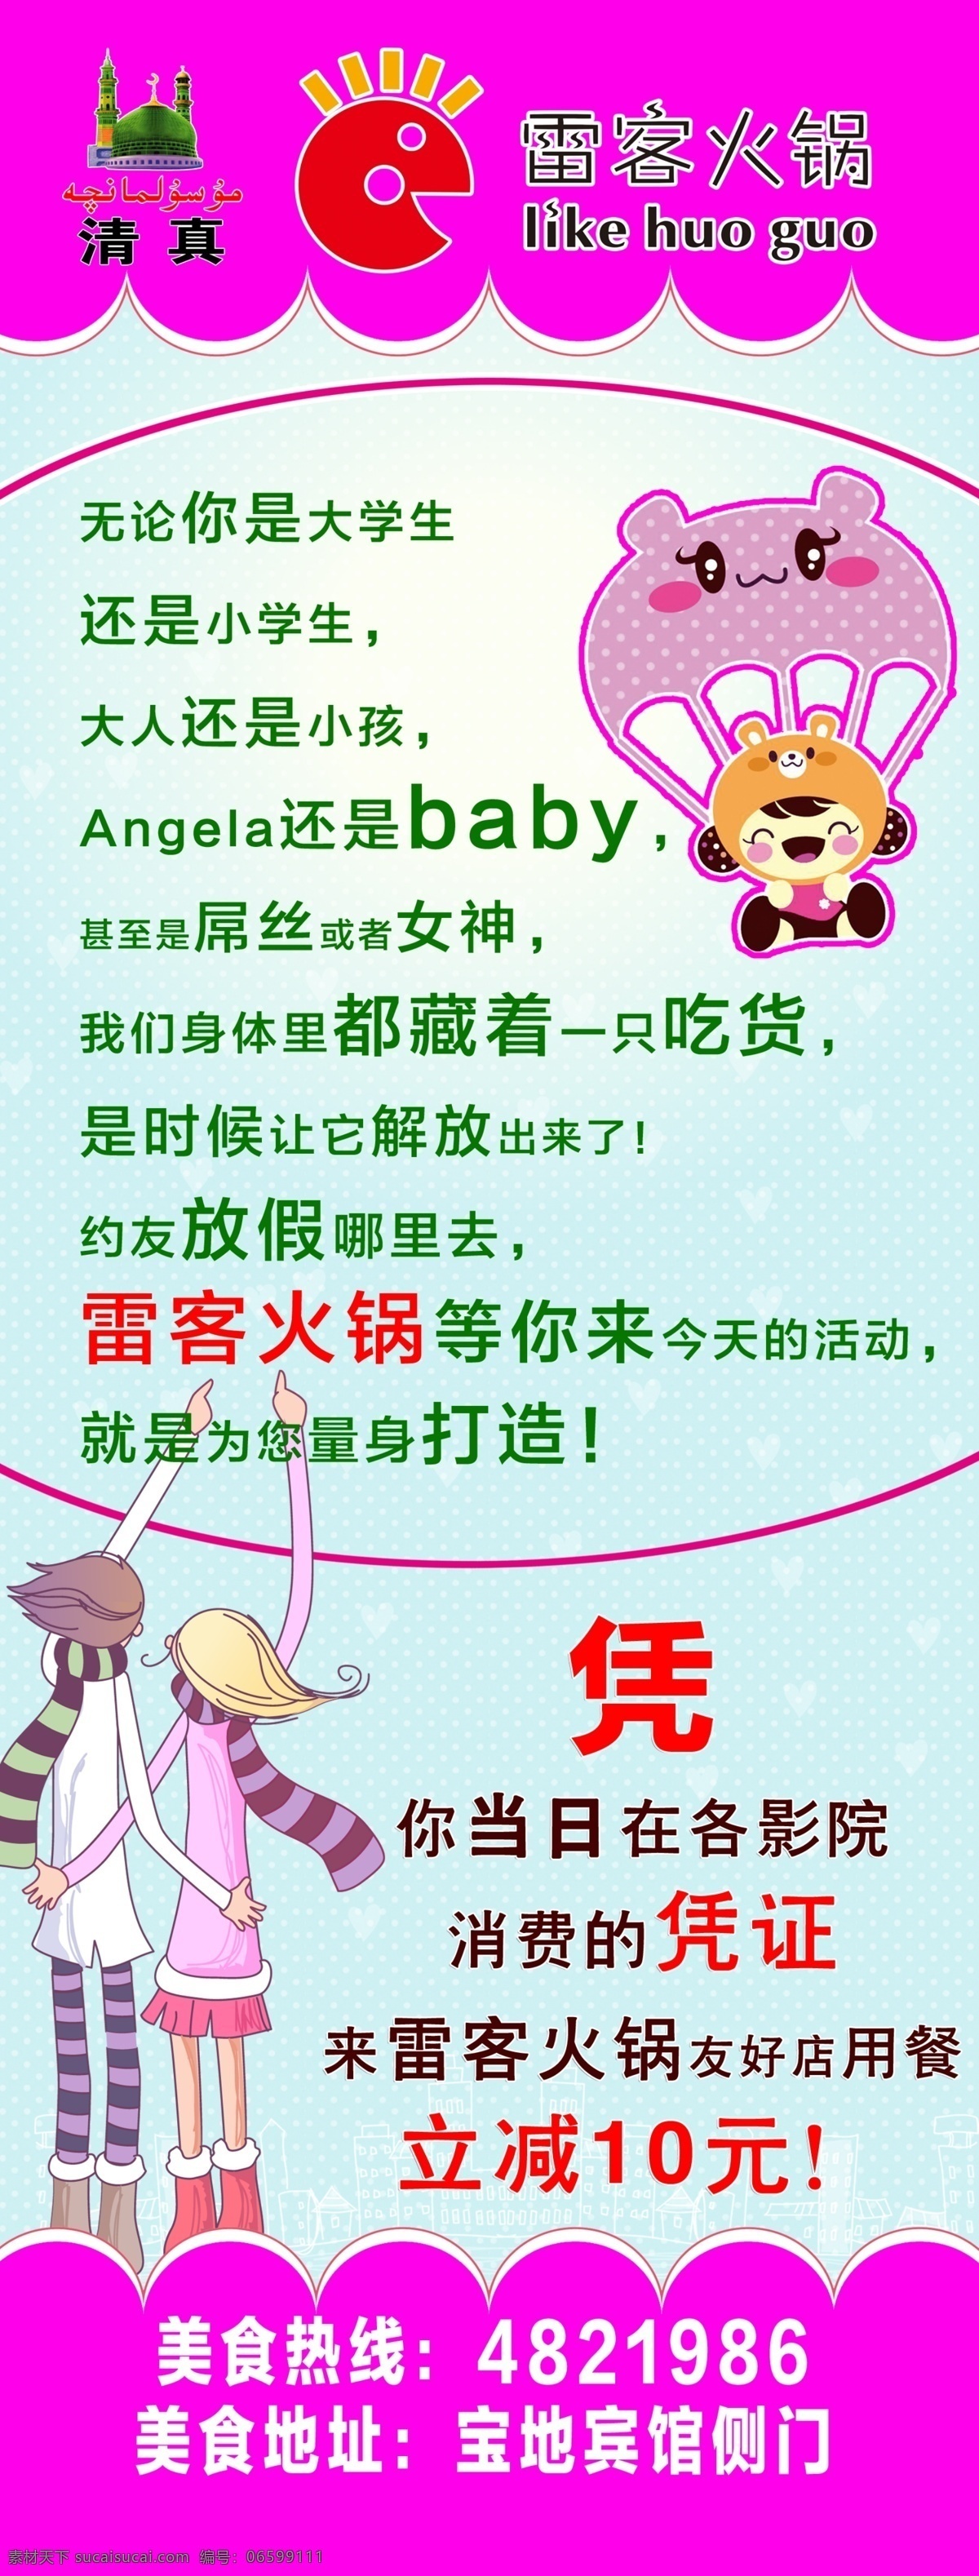 屌丝展架 屌丝vs女神 angela baby 紫色